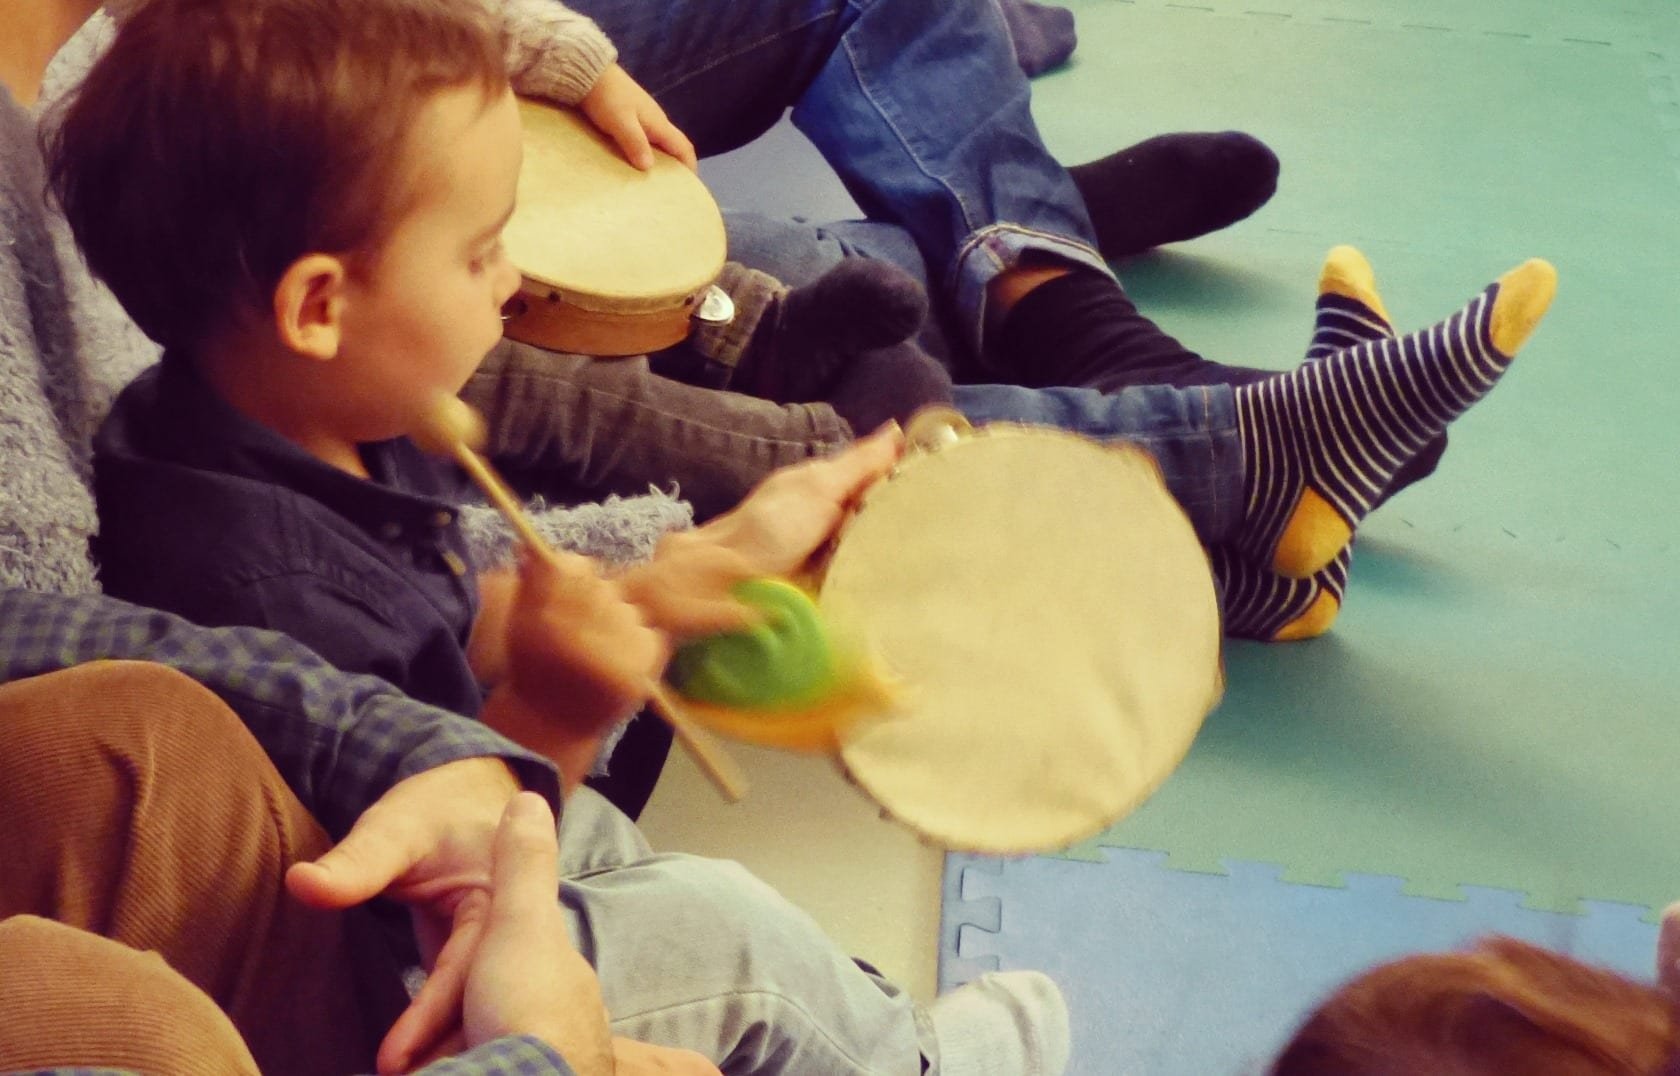 Musica para Bebes no Conservatório de Música de Sintra